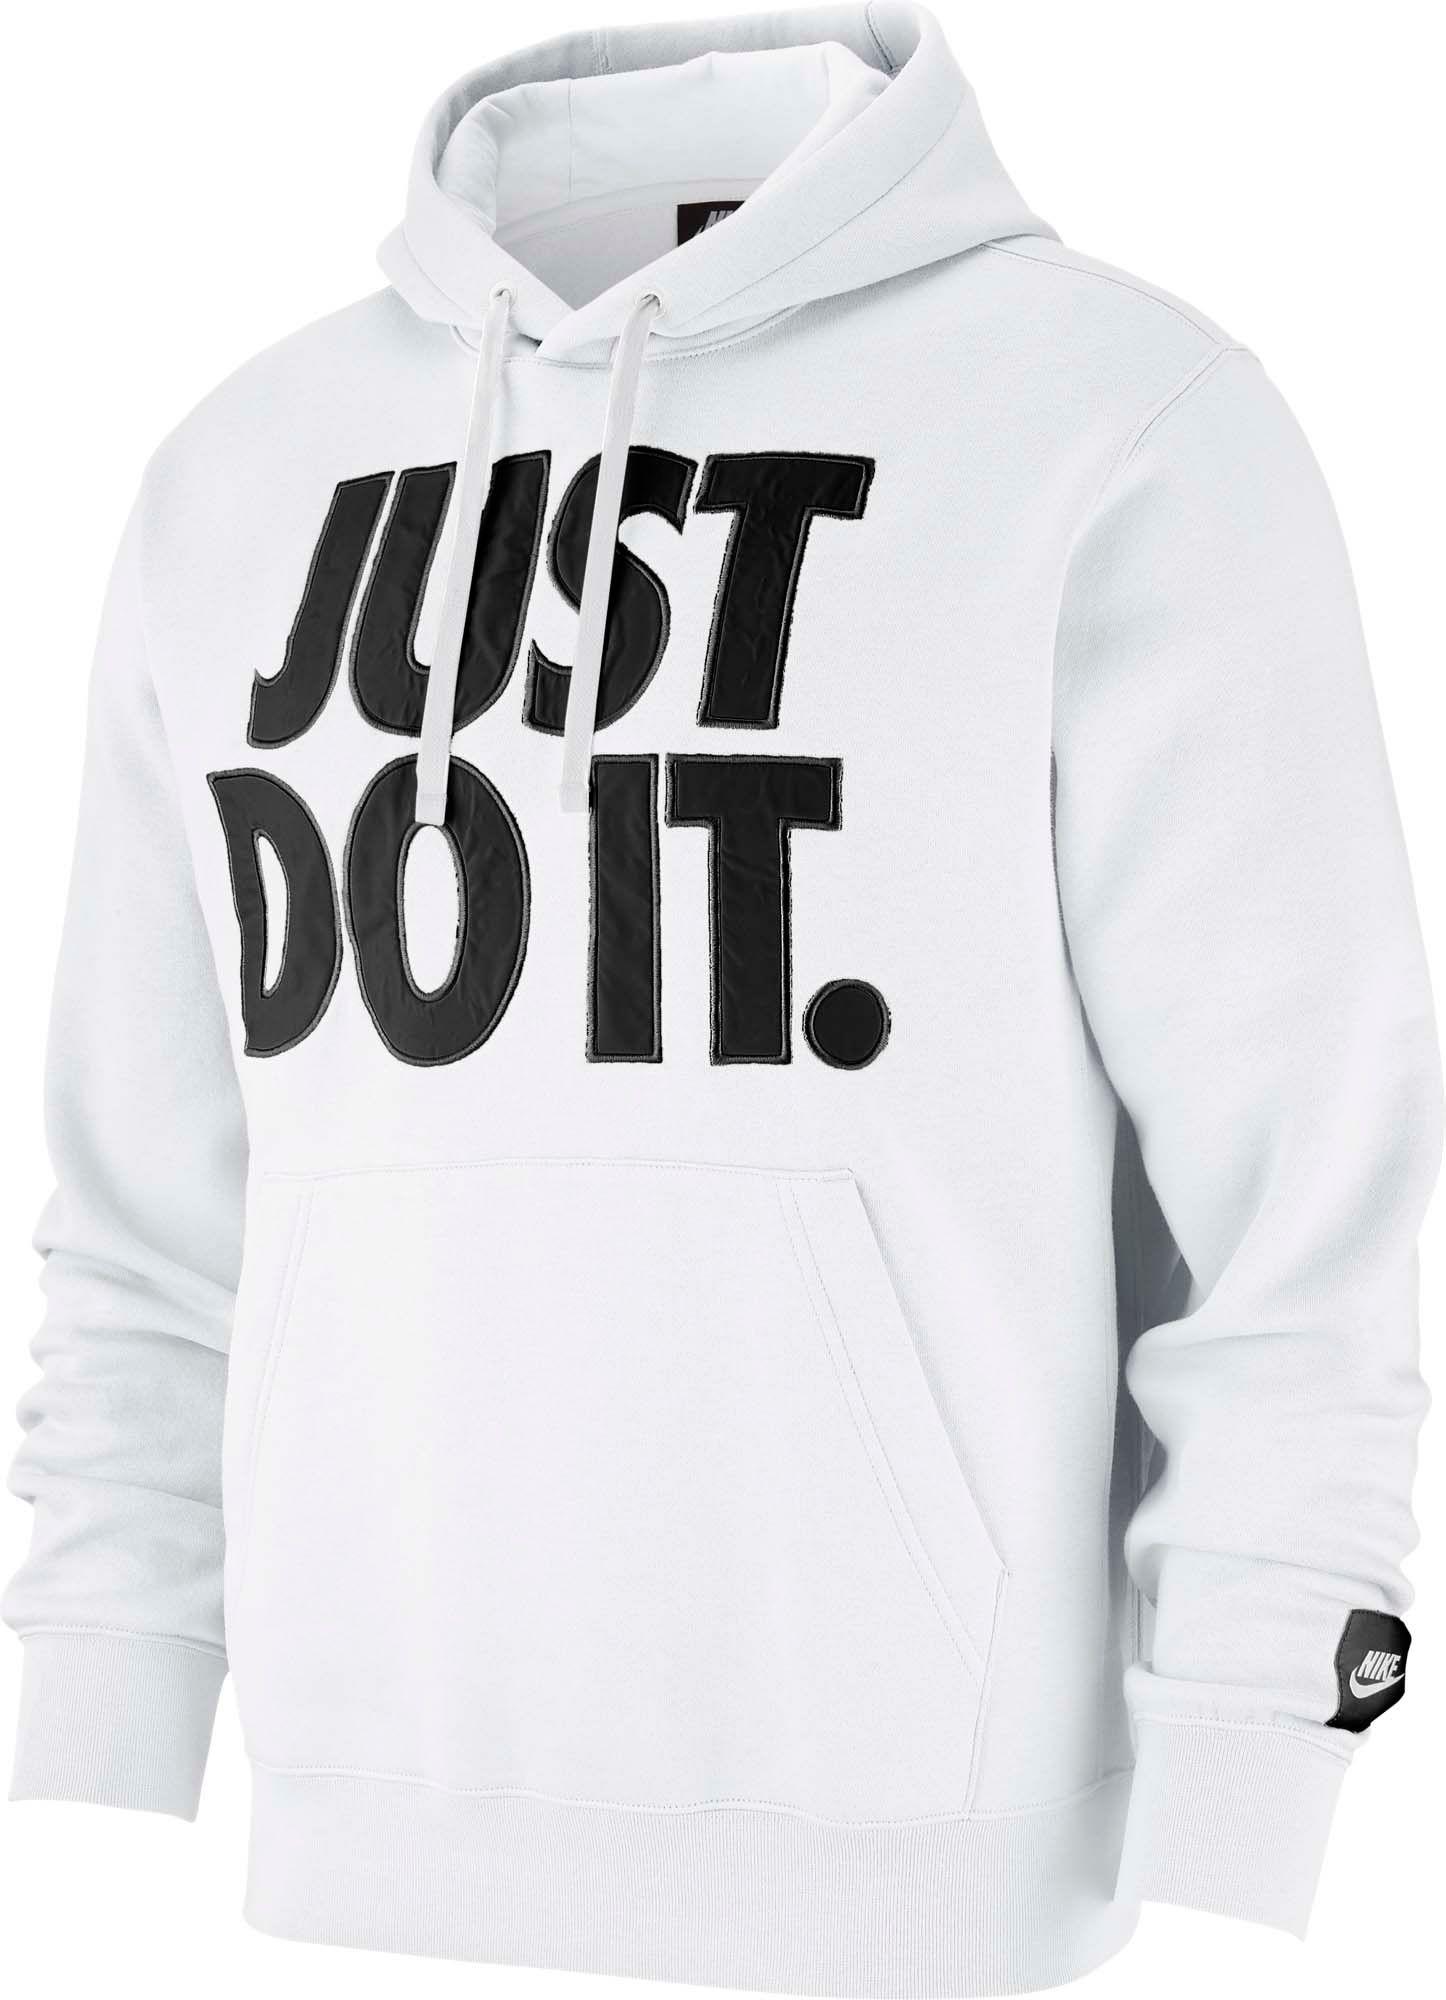 Nike Sportswear Just Do It Fleece Pullover Hoodie in White for Men - Lyst